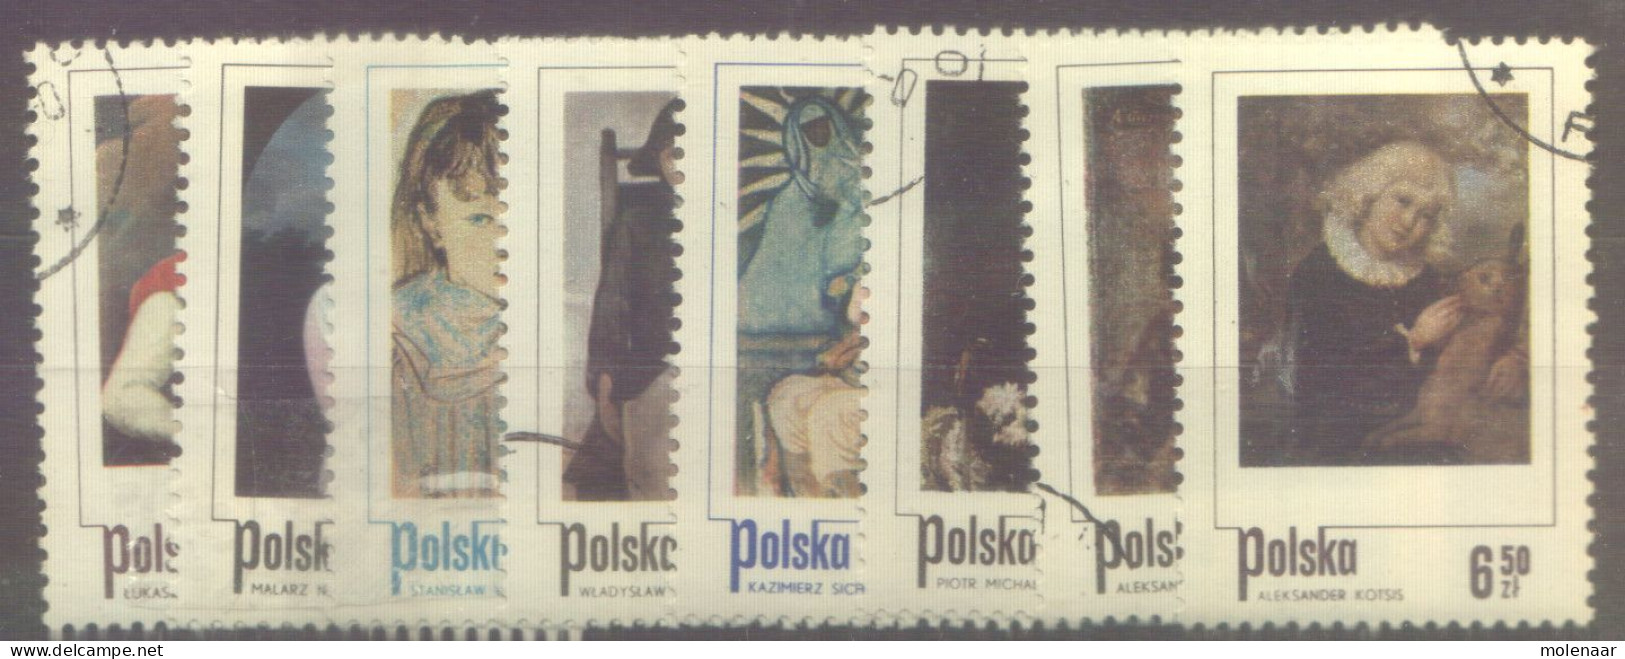 Postzegels > Europa > Polen > 1944-.... Republiek > 1971-80 > Gebruikt No. 2335-2342 (12112) - Usados